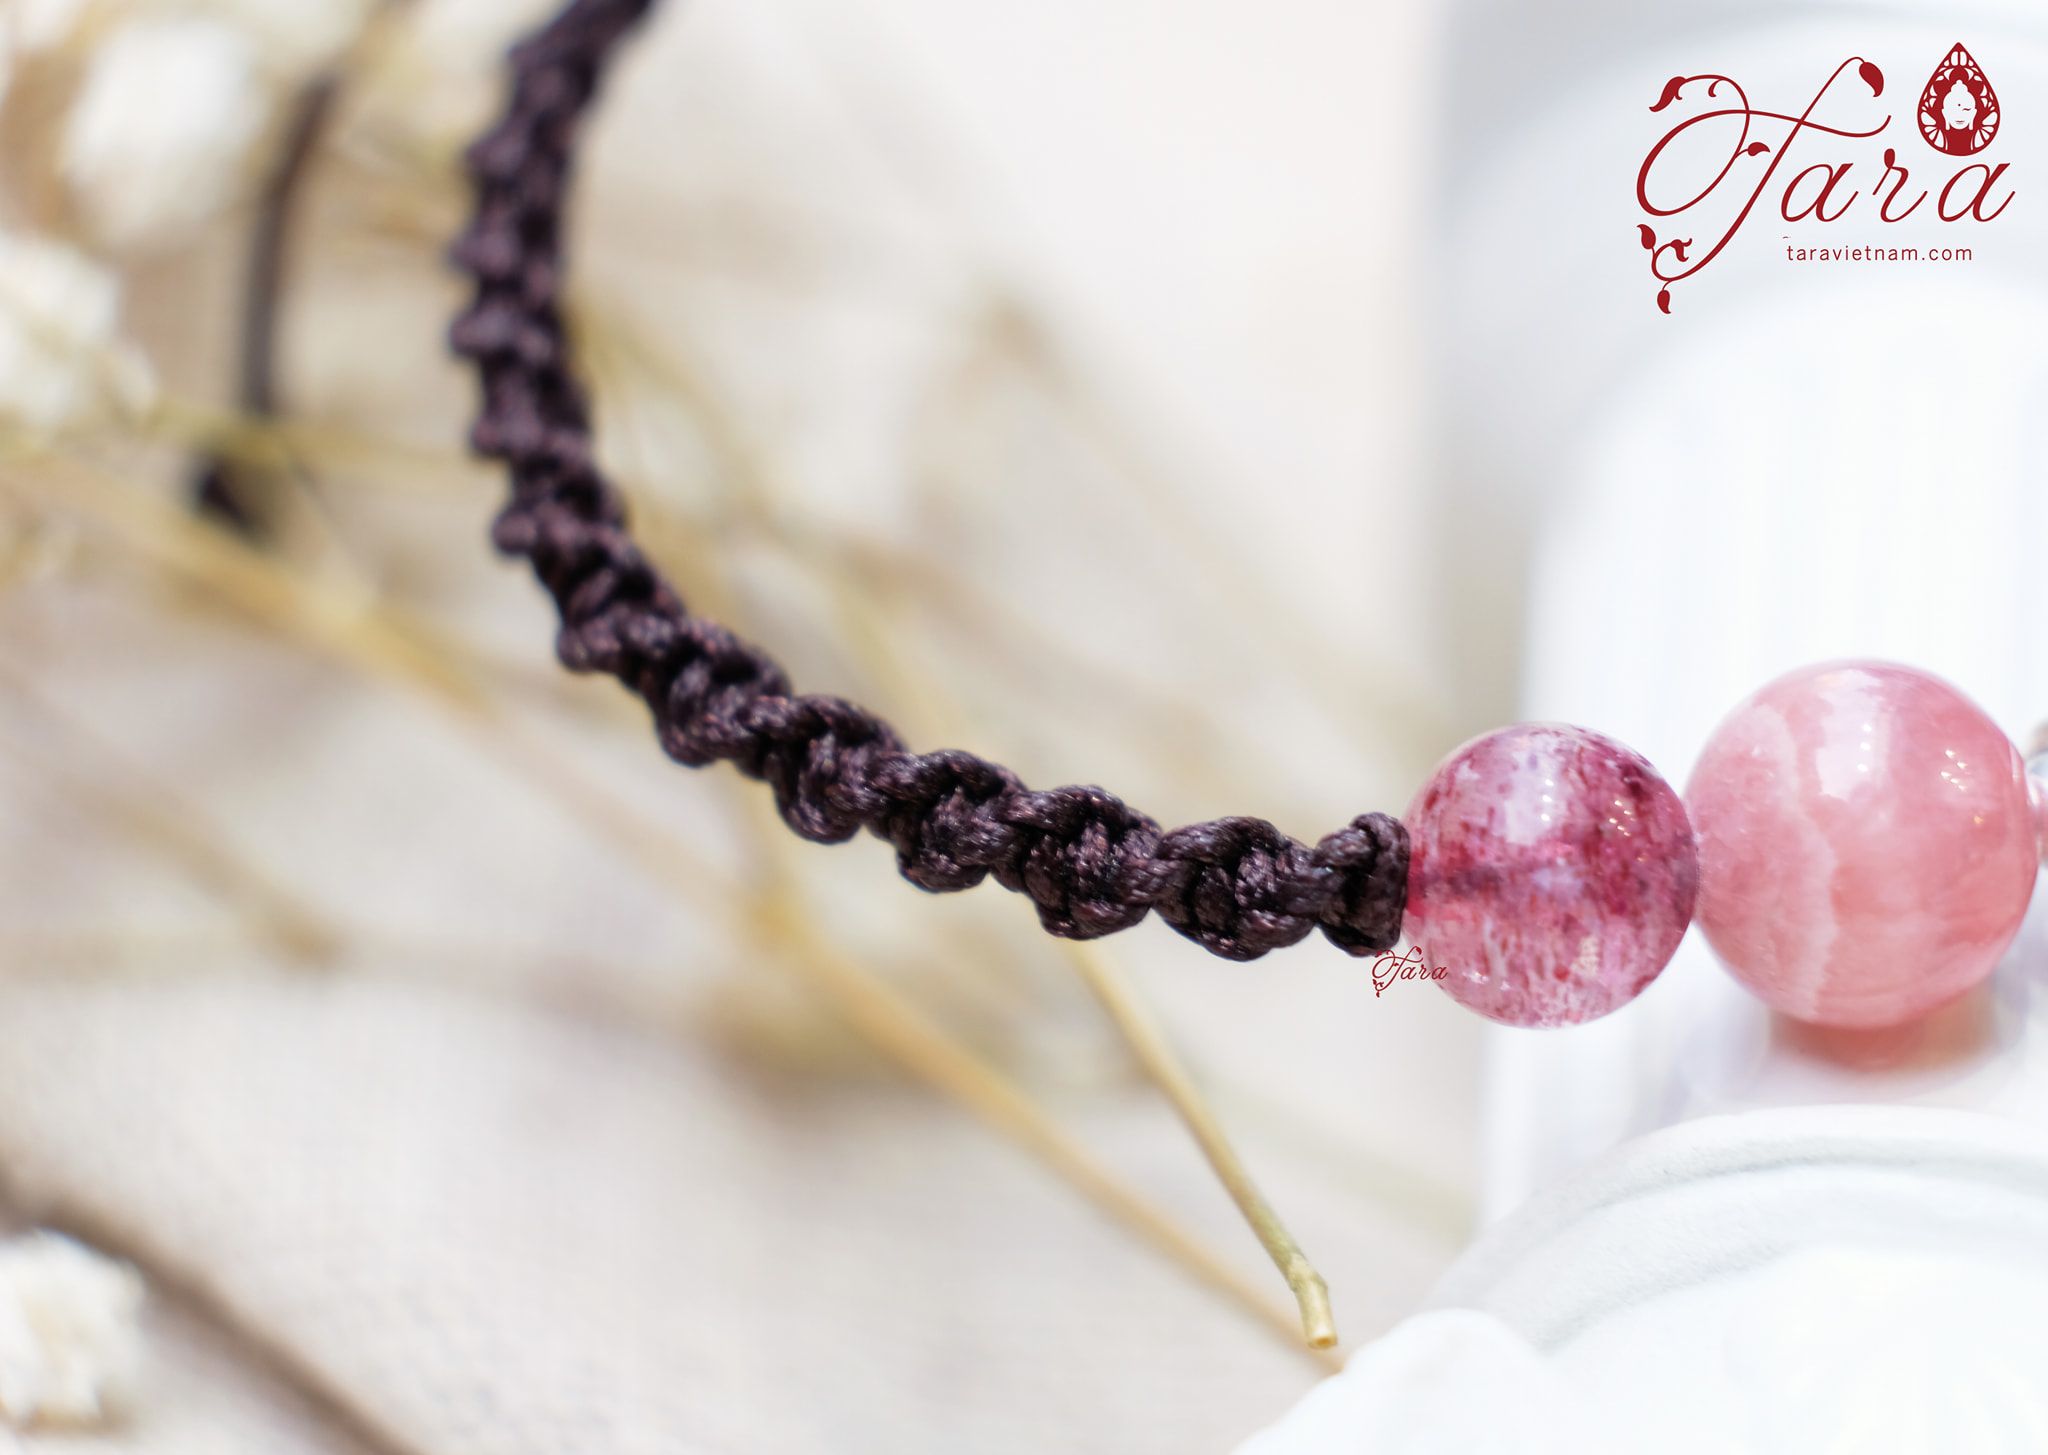  Vòng dây vải thời trang với Thạch anh dâu hồng và đá đào hoa ngọt ngào 